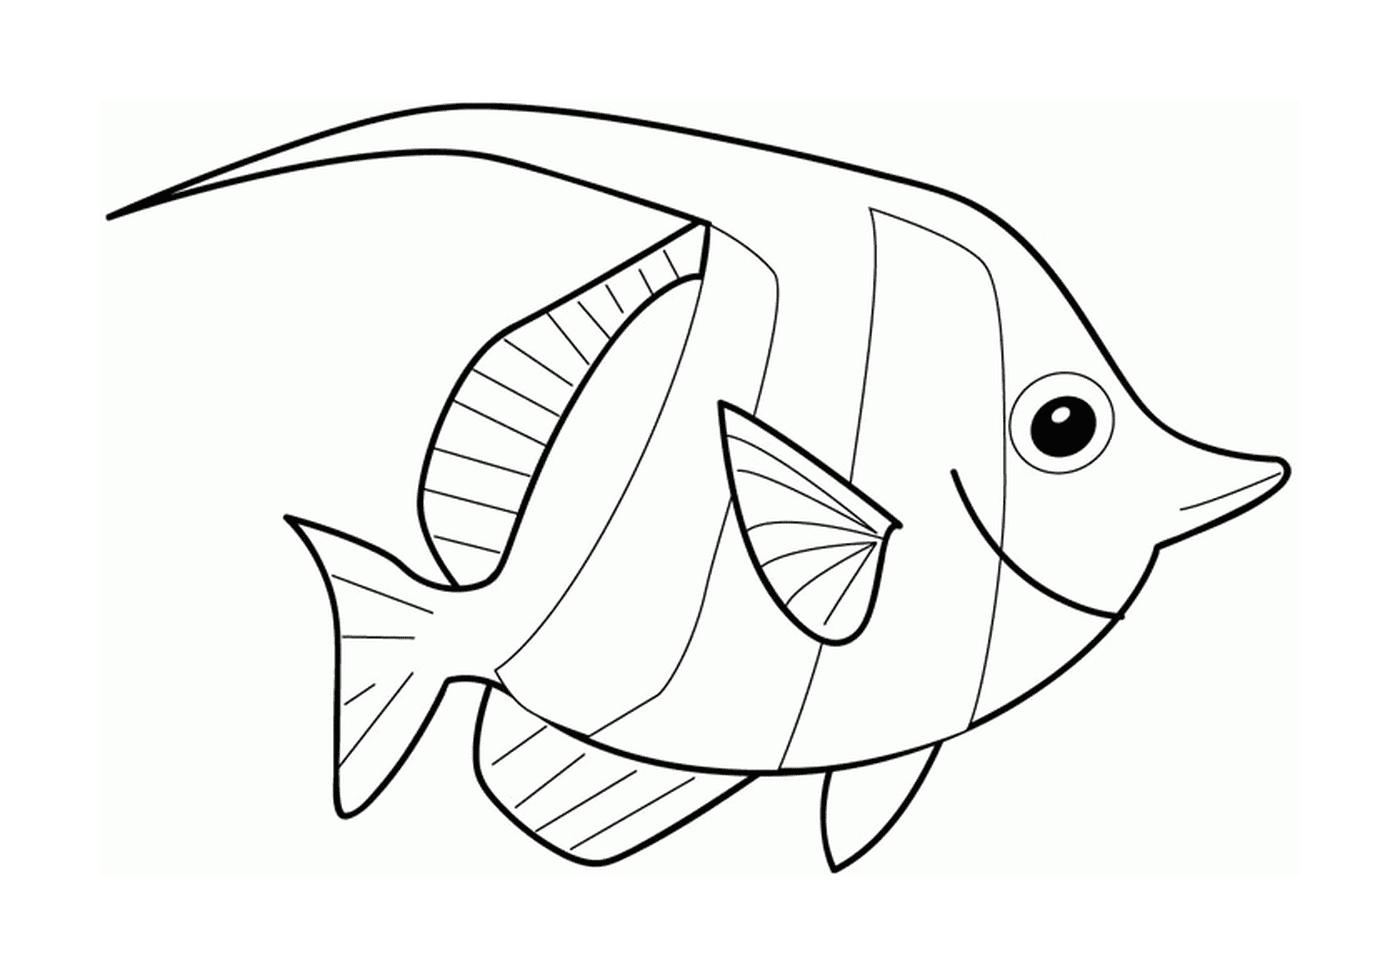  A fish 